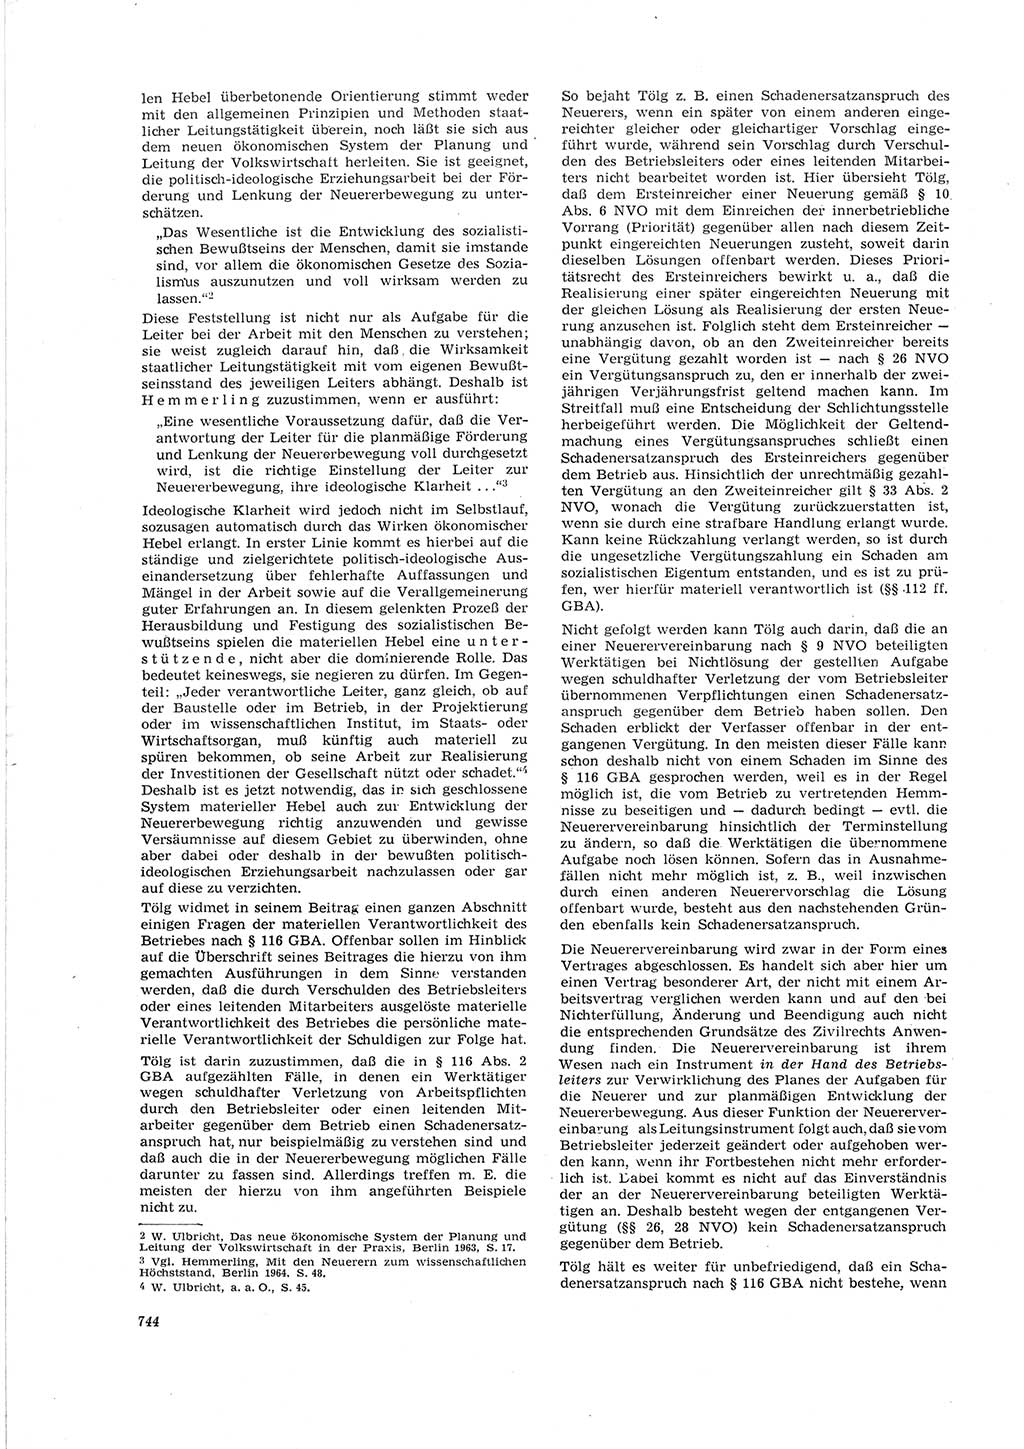 Neue Justiz (NJ), Zeitschrift für Recht und Rechtswissenschaft [Deutsche Demokratische Republik (DDR)], 19. Jahrgang 1965, Seite 744 (NJ DDR 1965, S. 744)